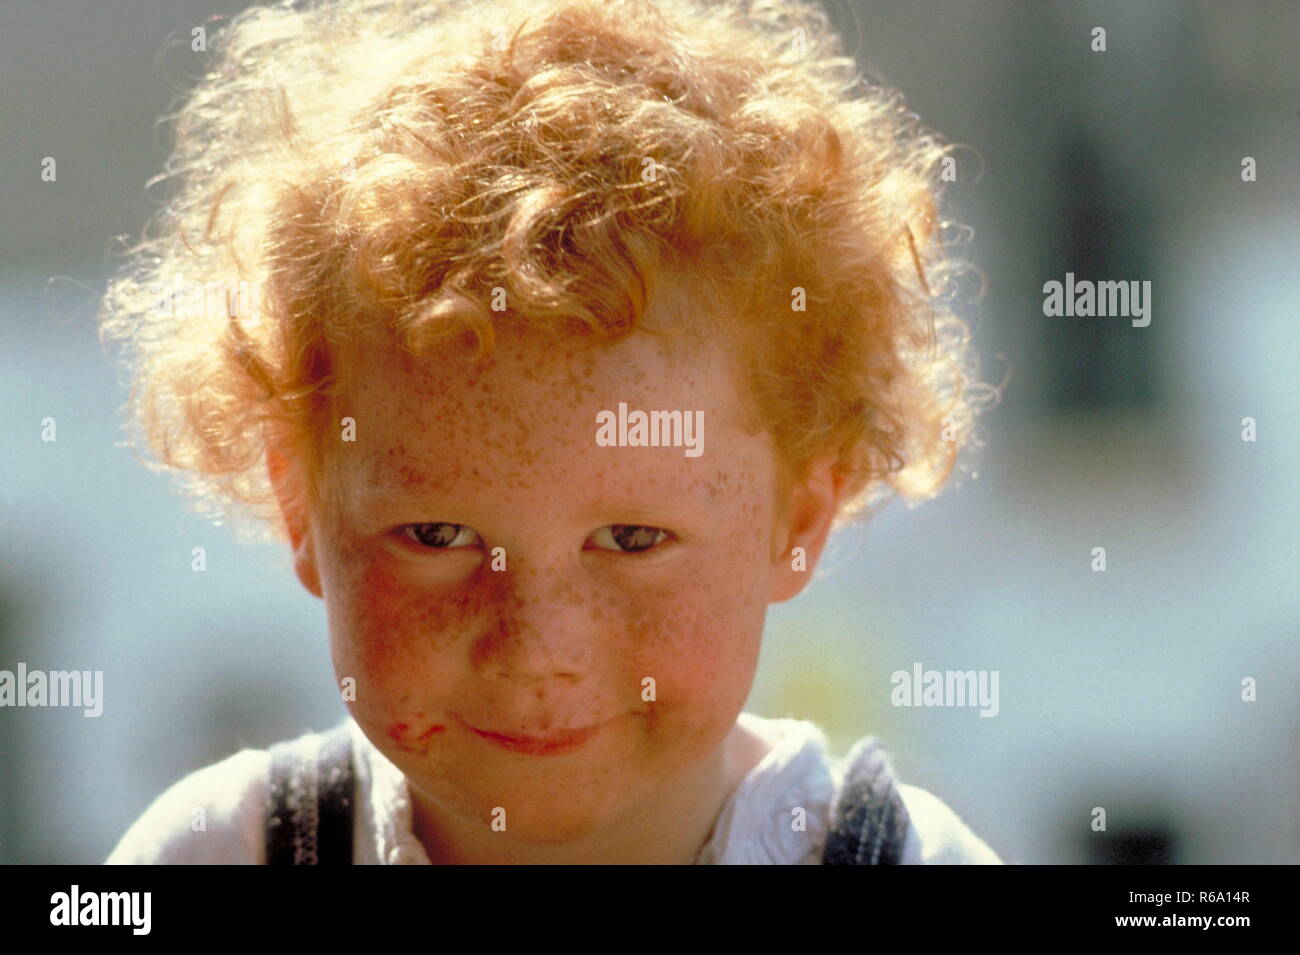 Portrait, grinsender Junge, 5 Jahre, mit kurzen roten Locken und Sommersprossen Stock Photo